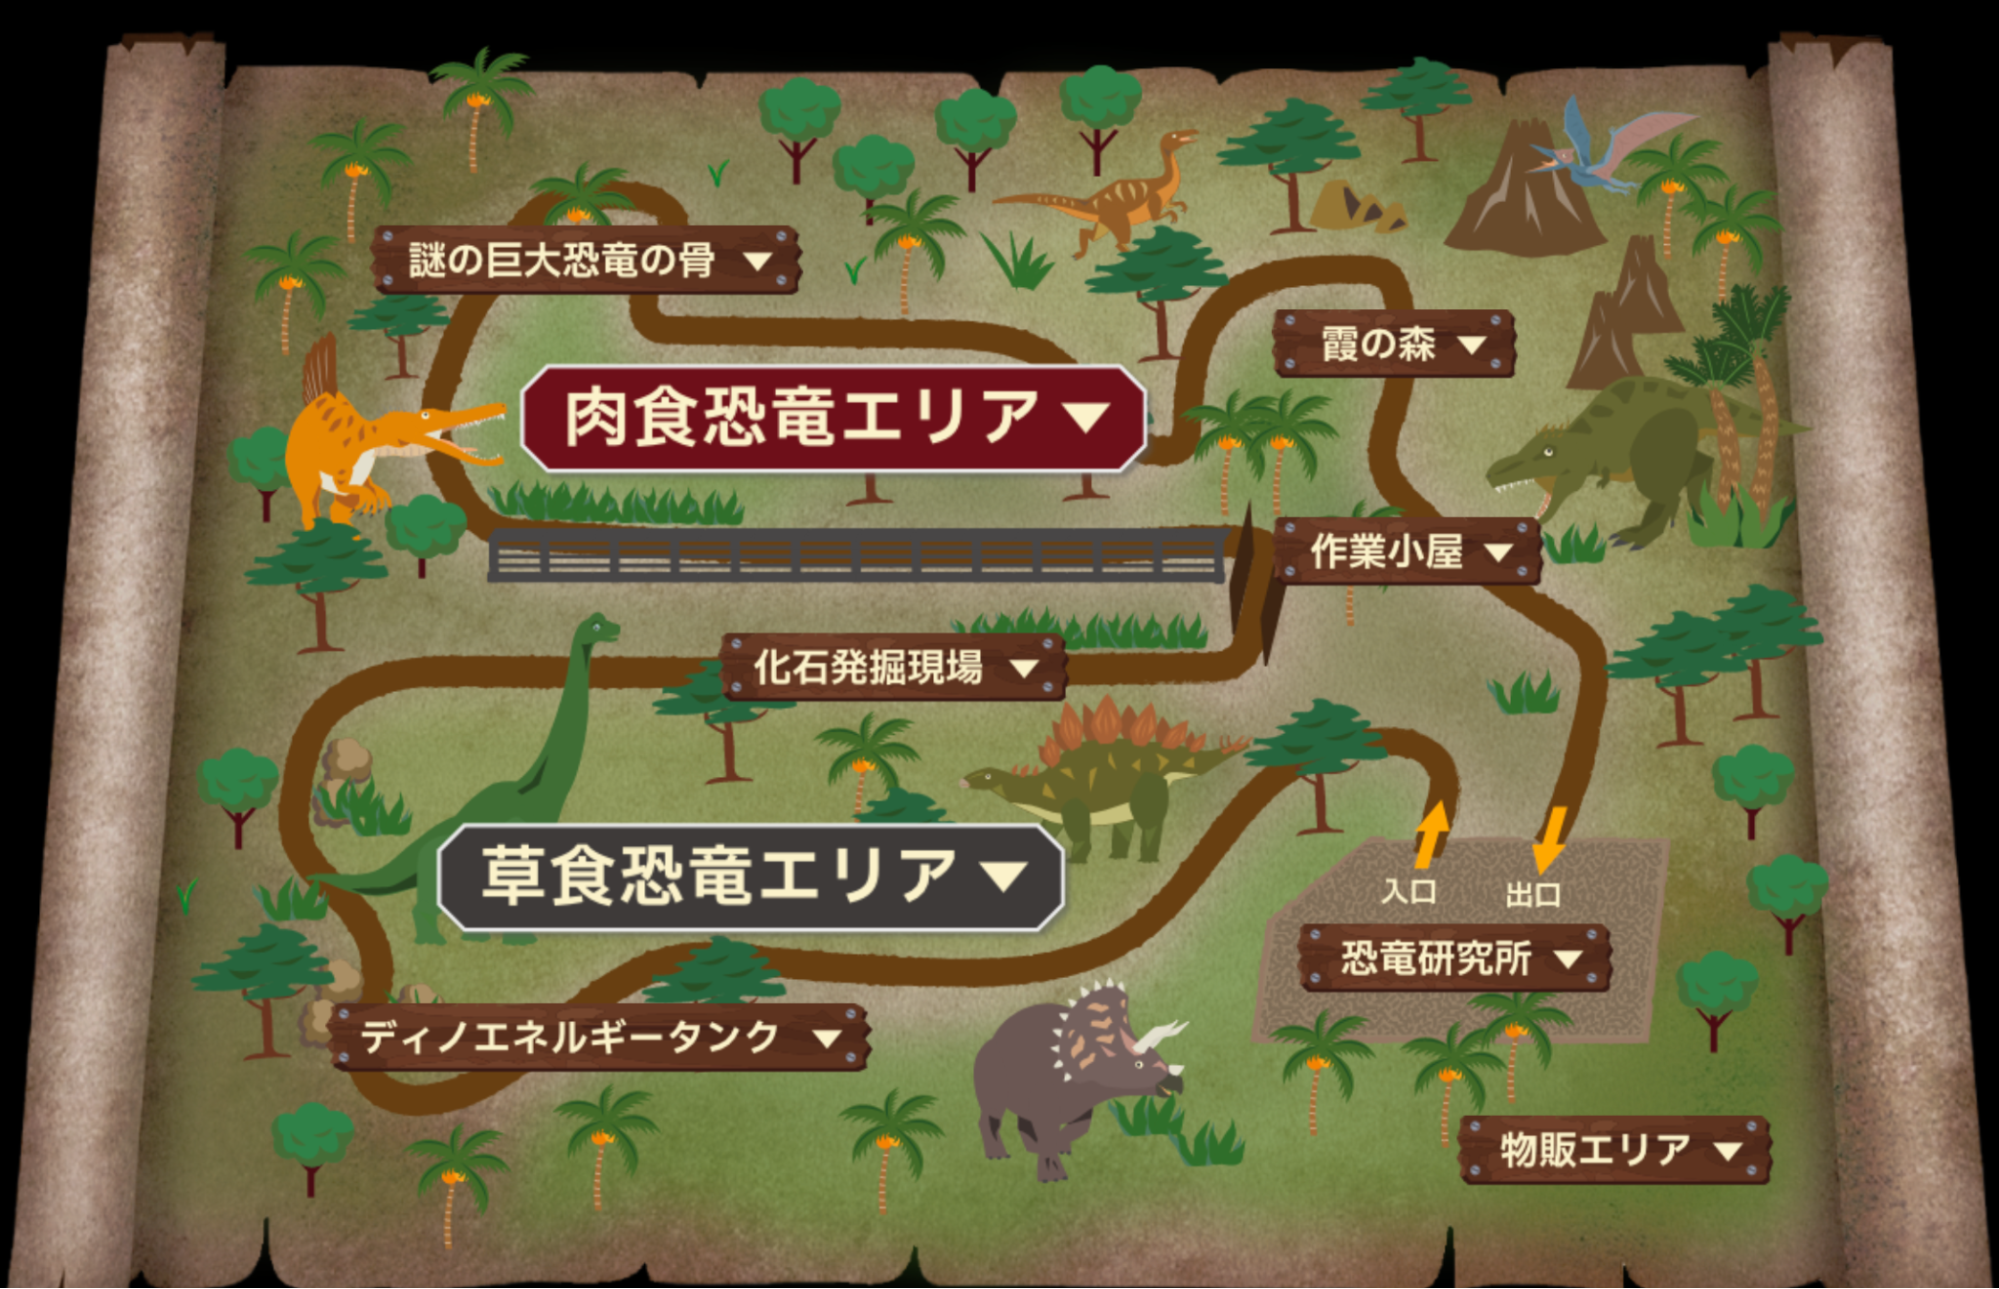 「恐竜の森」の各エリア